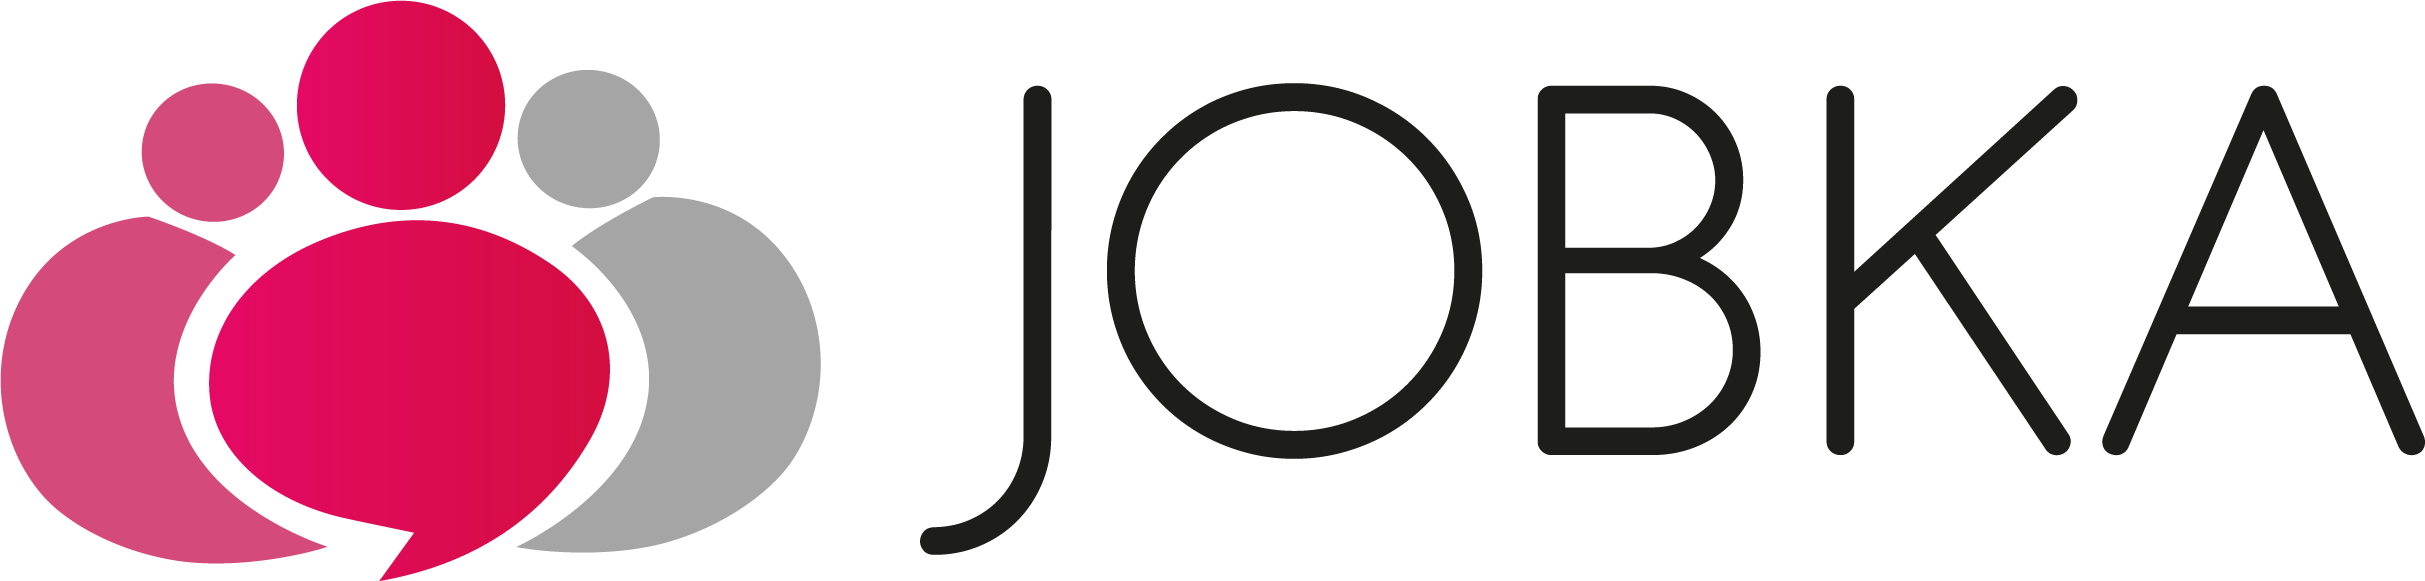 JOBka logo